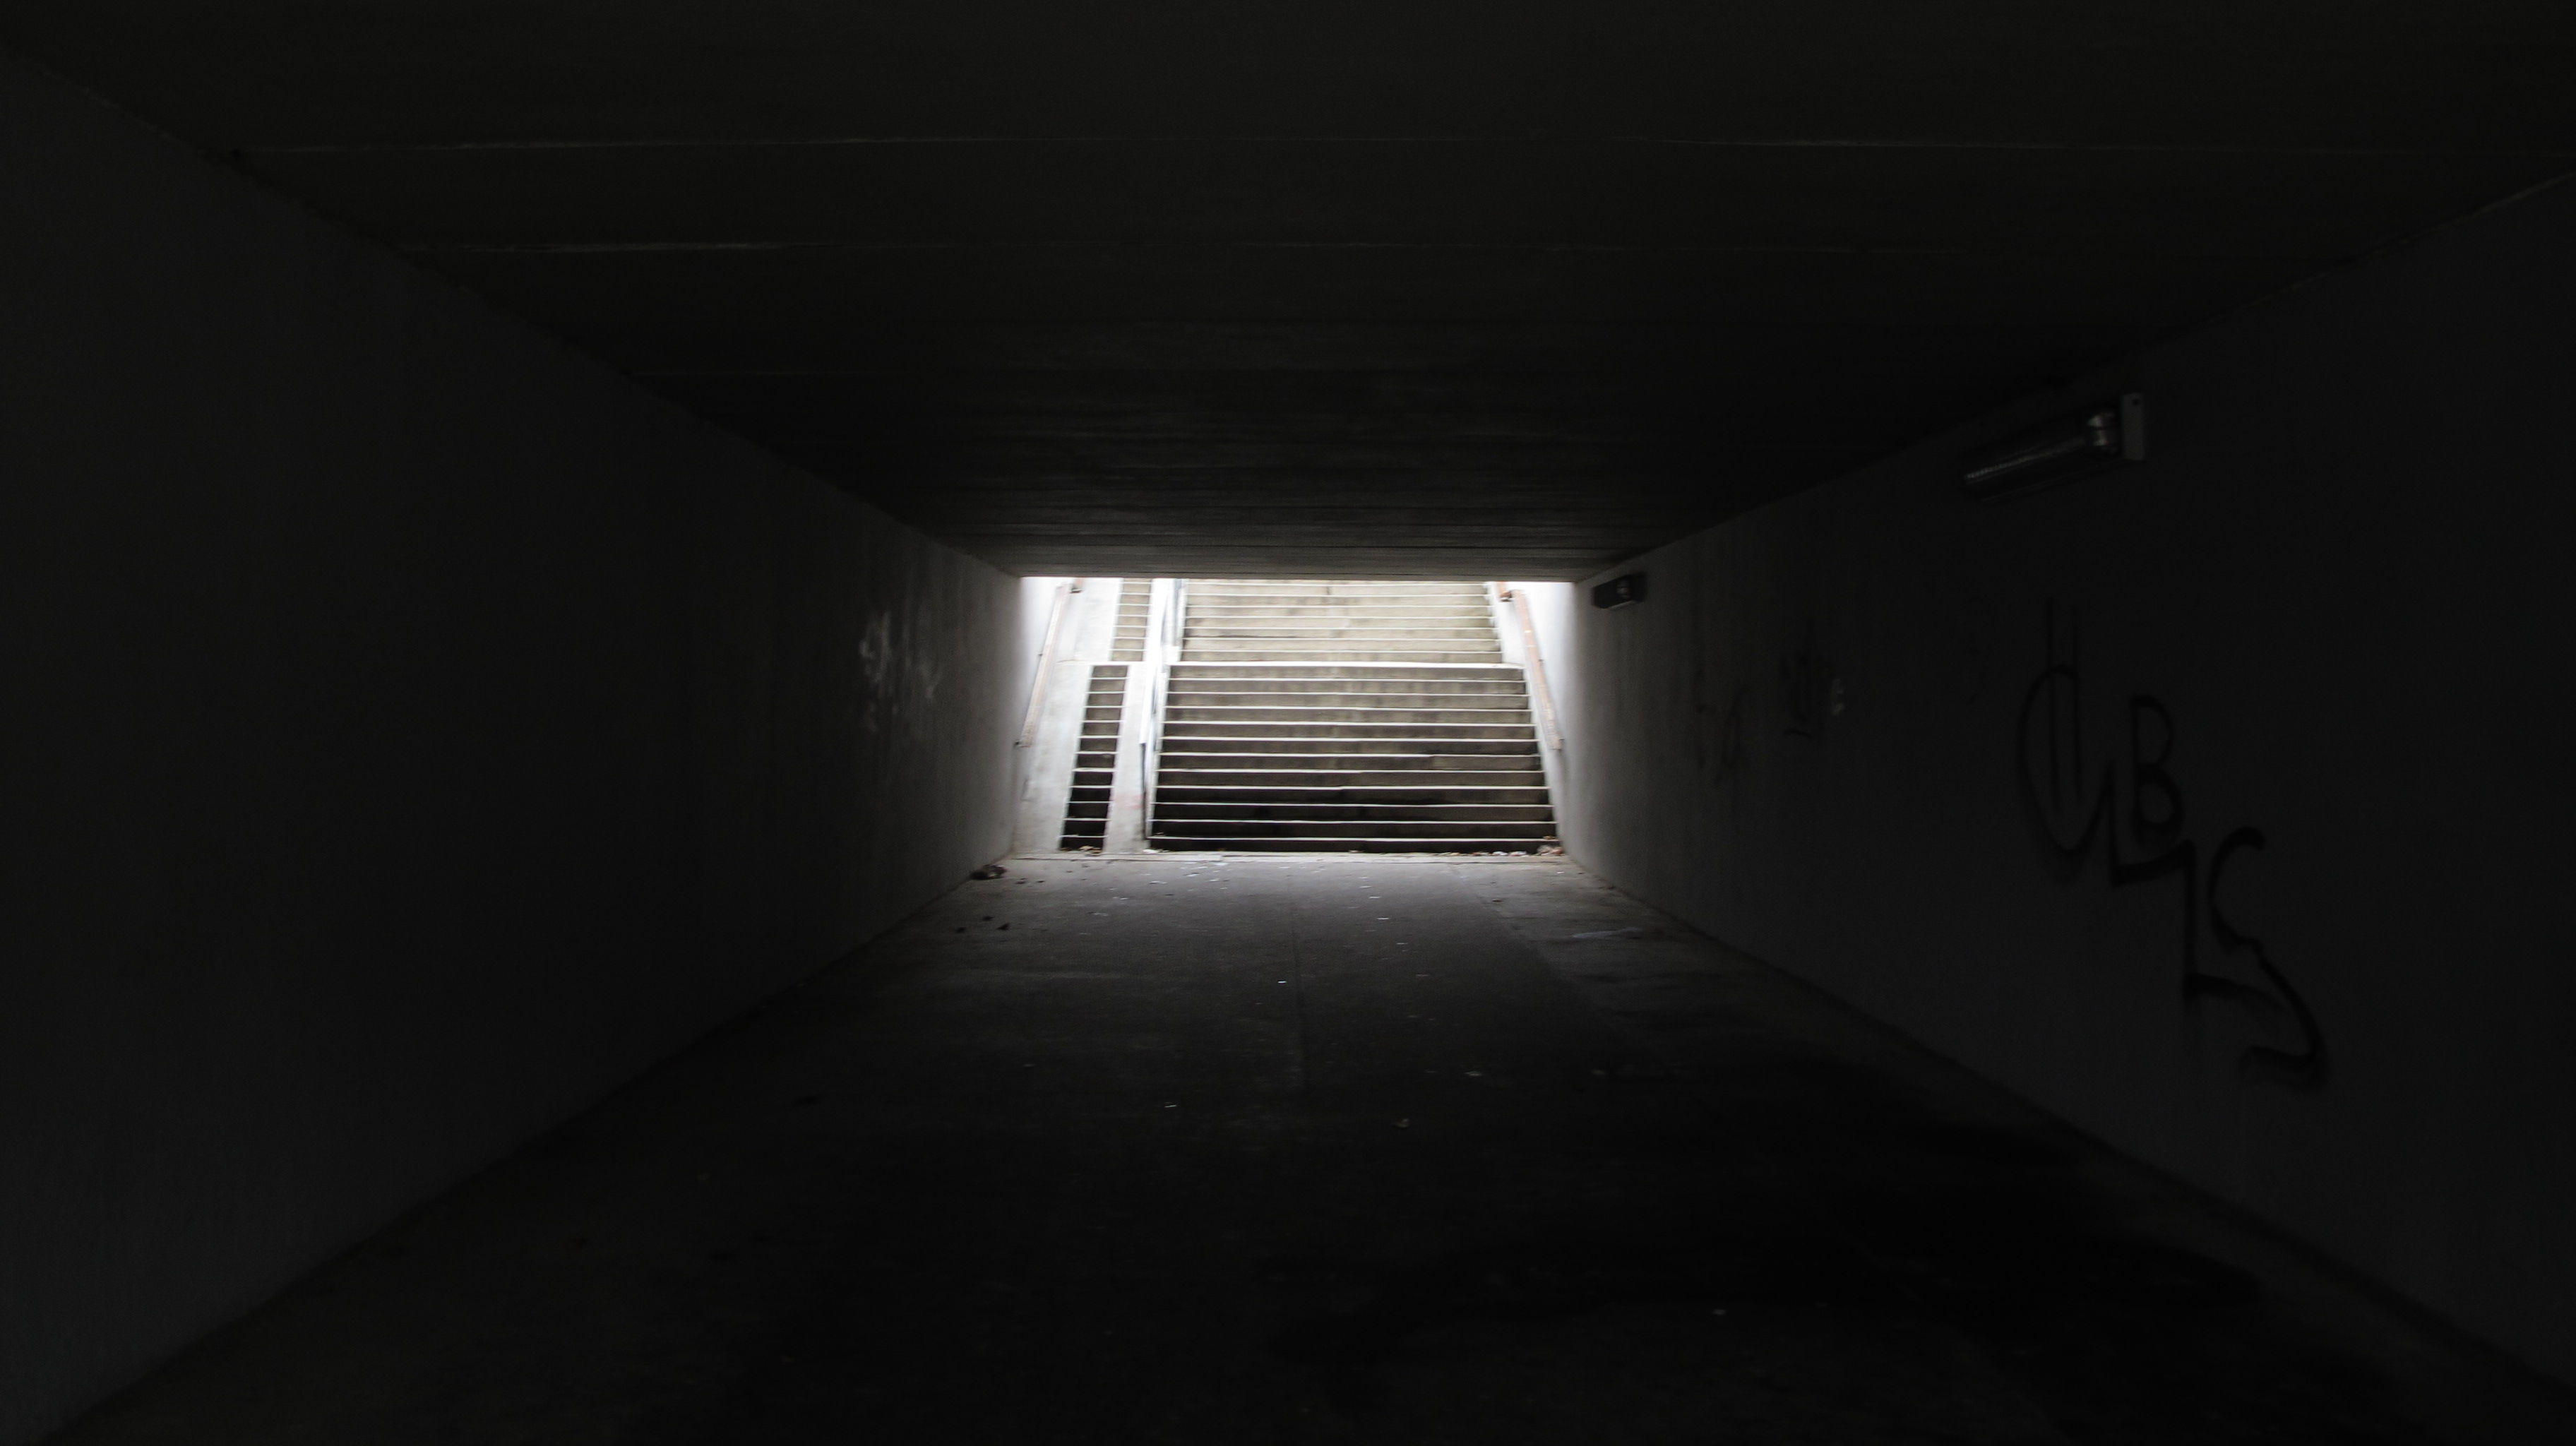 File:A dark underpass - panoramio.jpg - Wikimedia Commons